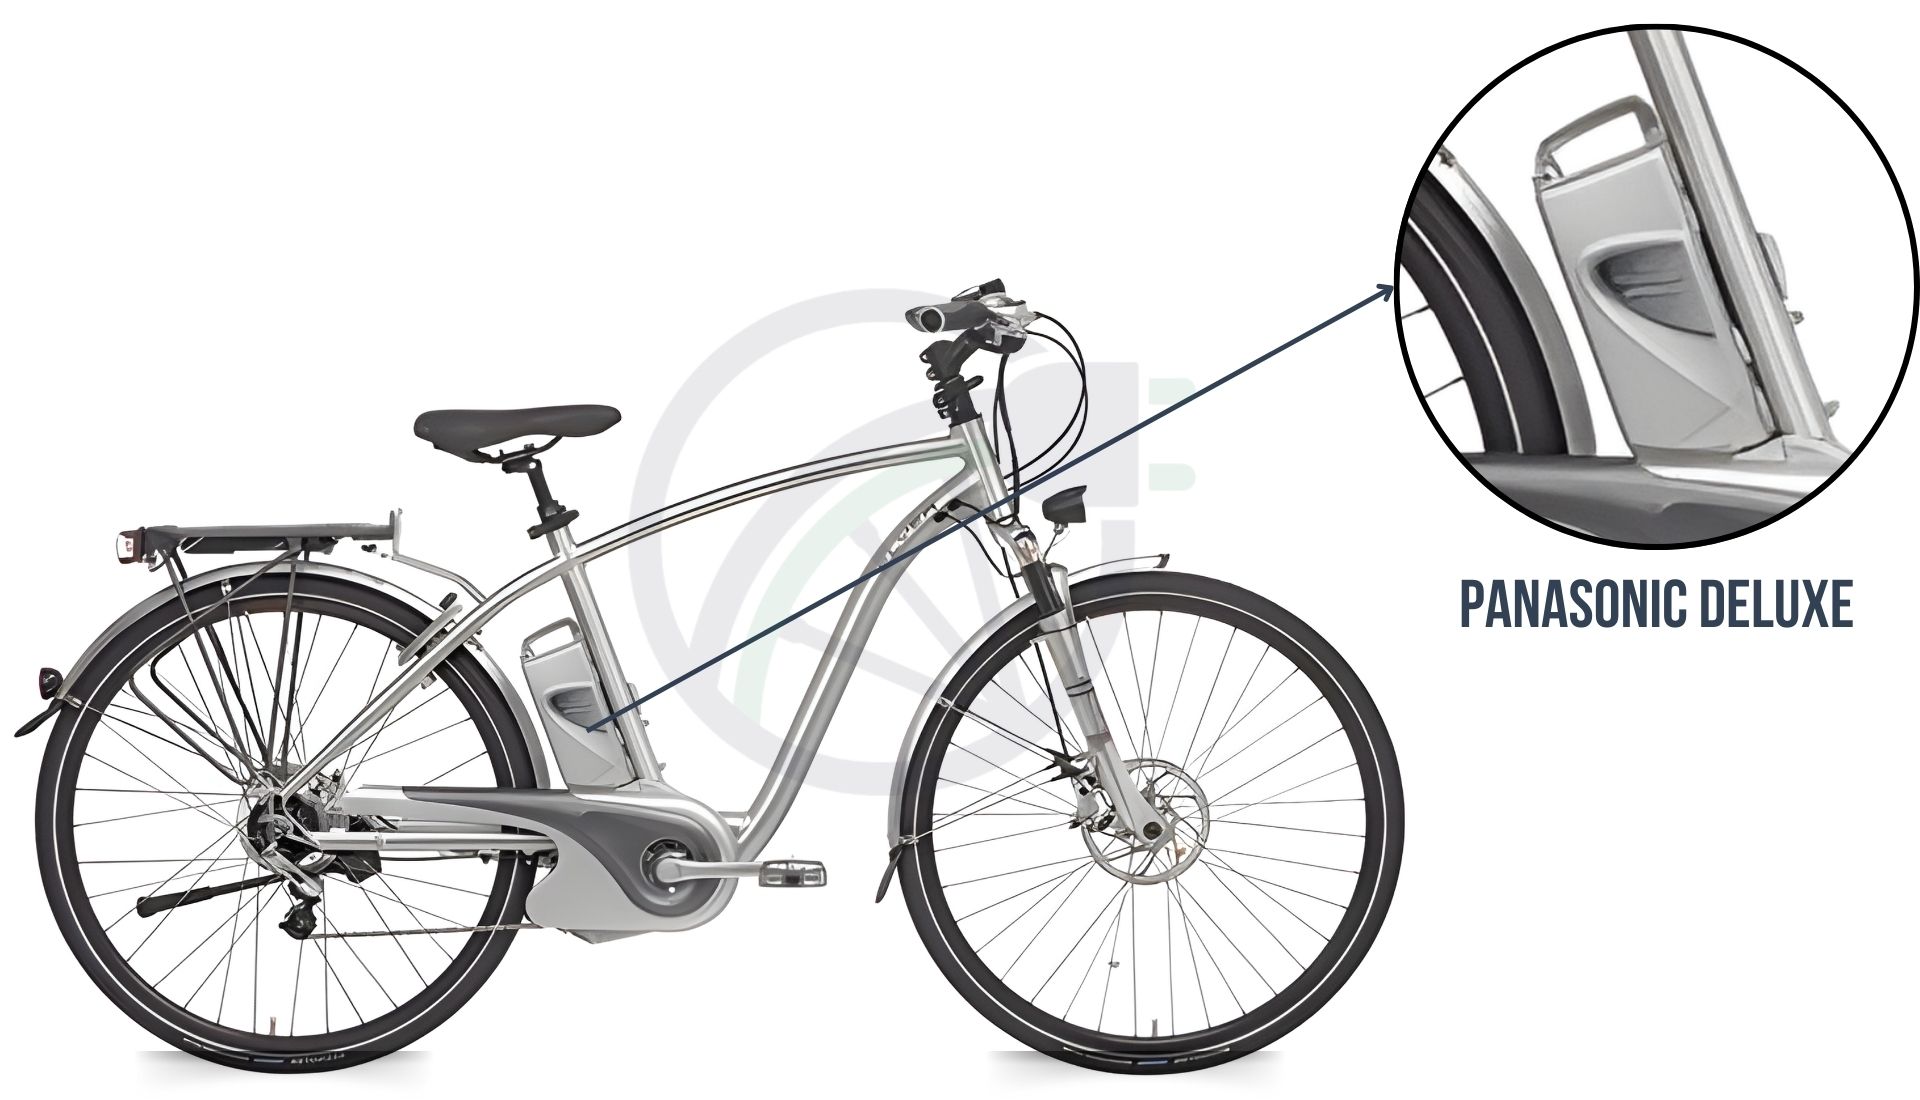 afbeelding van een elektrische fiets met daarbij uitgelicht welke accu er in de fiets zit. in dit geval is dat de panasonic deluxe accu.